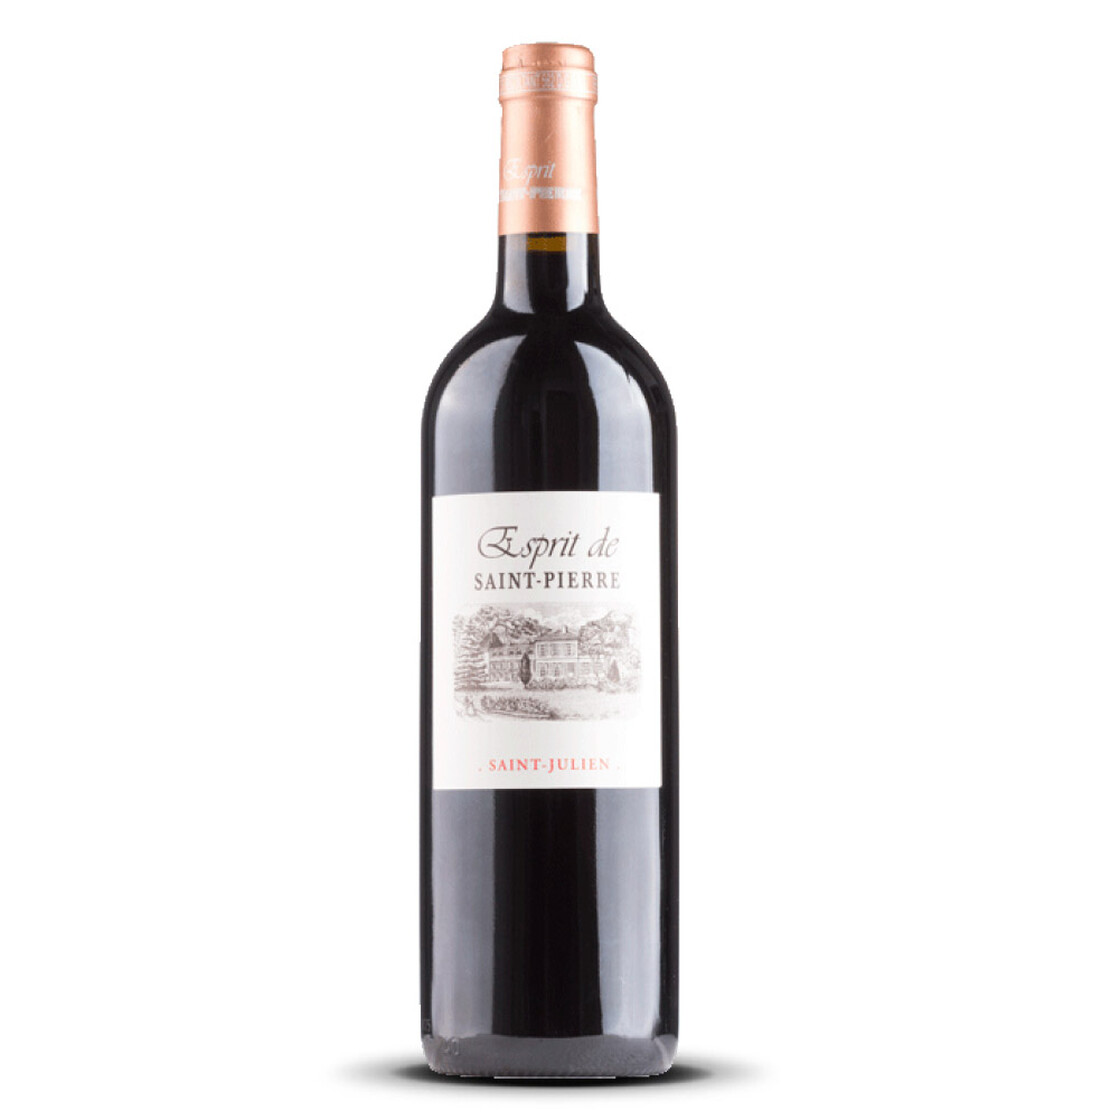 Esprit de Saint Pierre Saint Julien 2014er Bordeaux (1 x 0,75l)